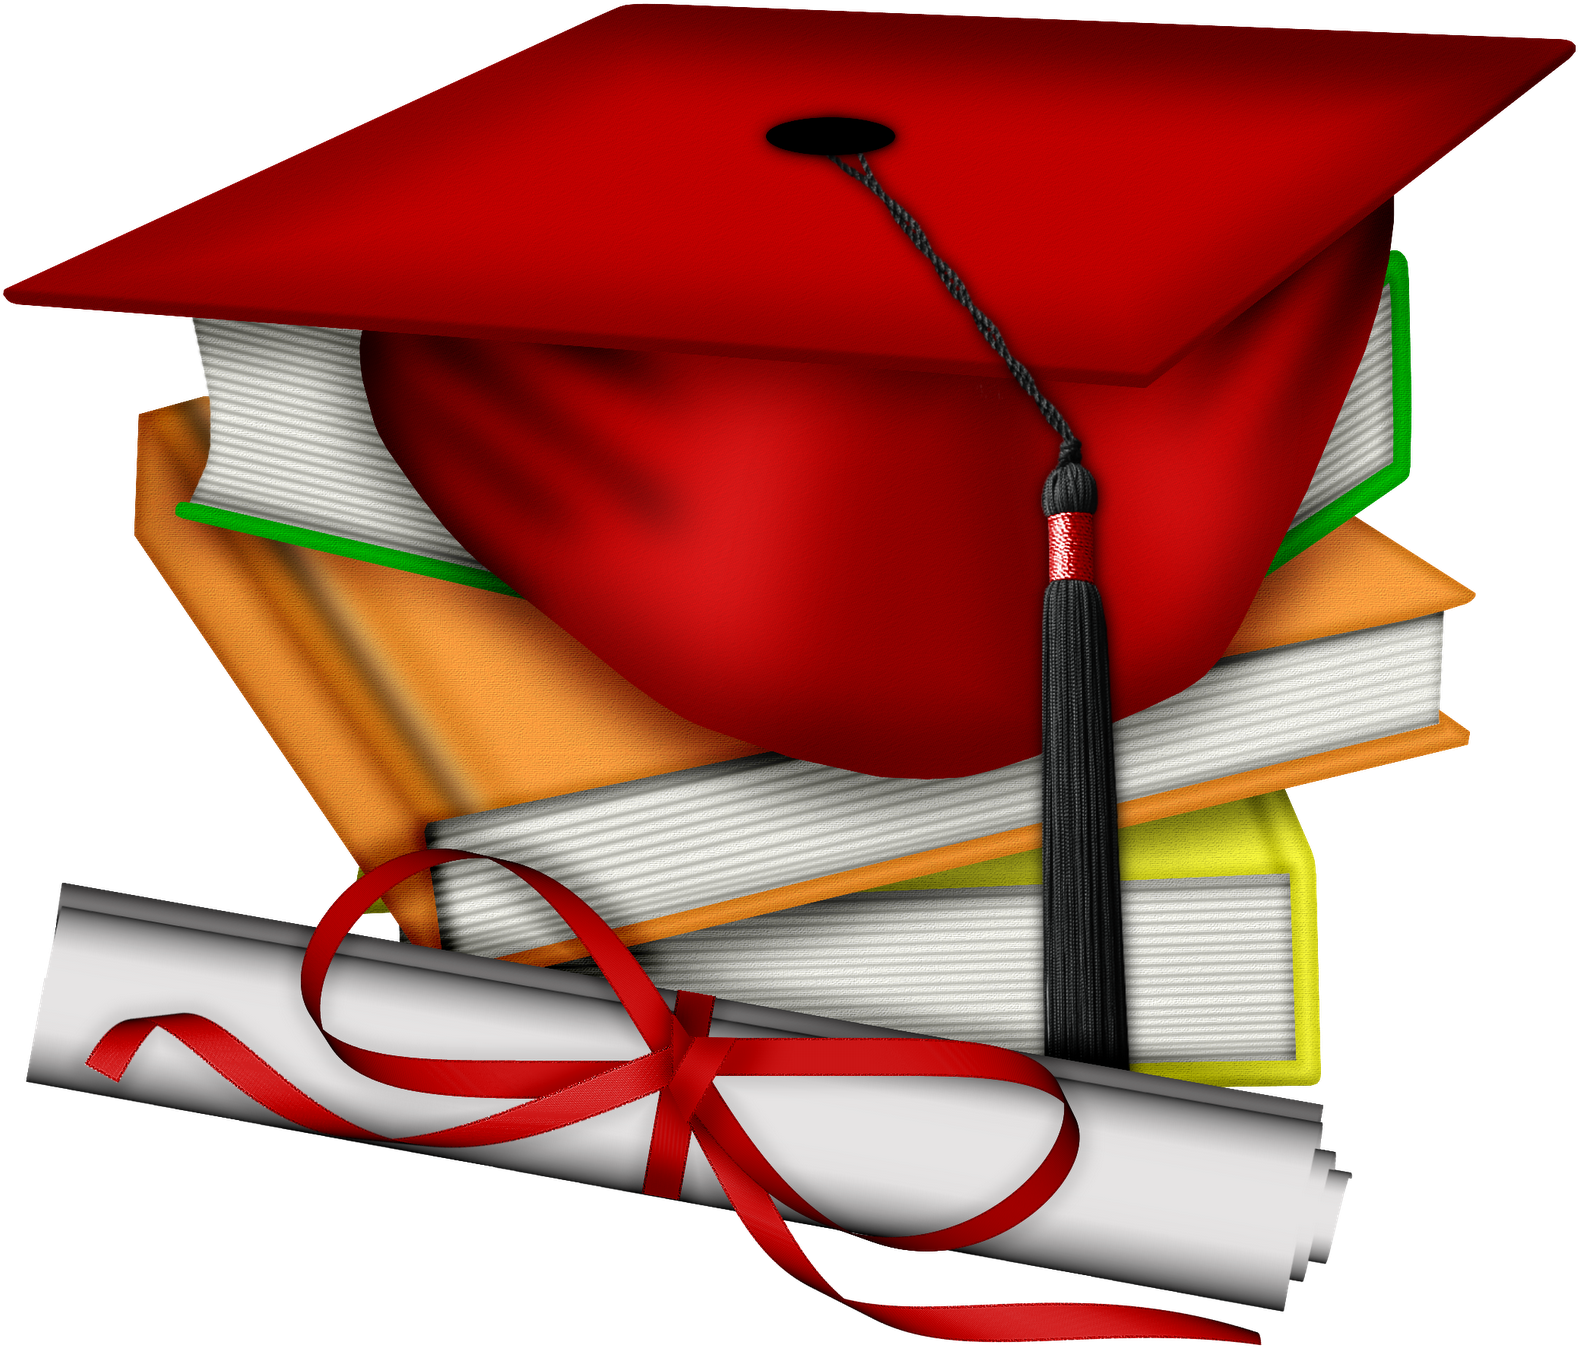 Escola & Formatura - Graduation Cap Green And Gold Clipart (1600x1376), Png Download